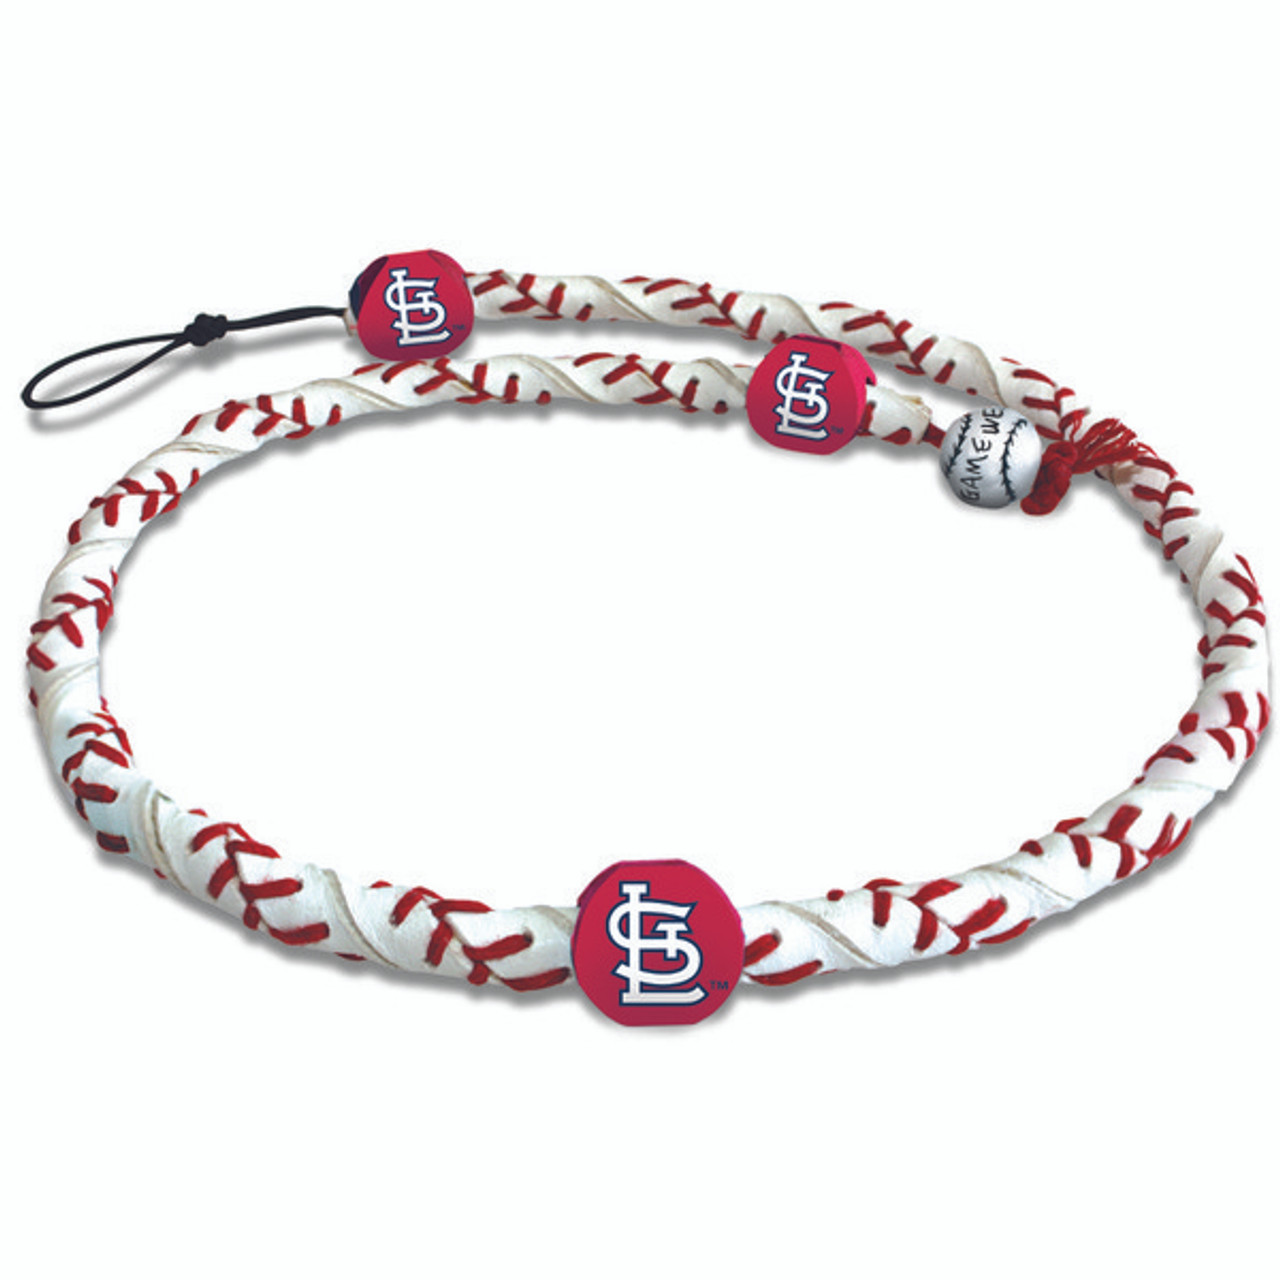 St. Louis Cardinals Necklace